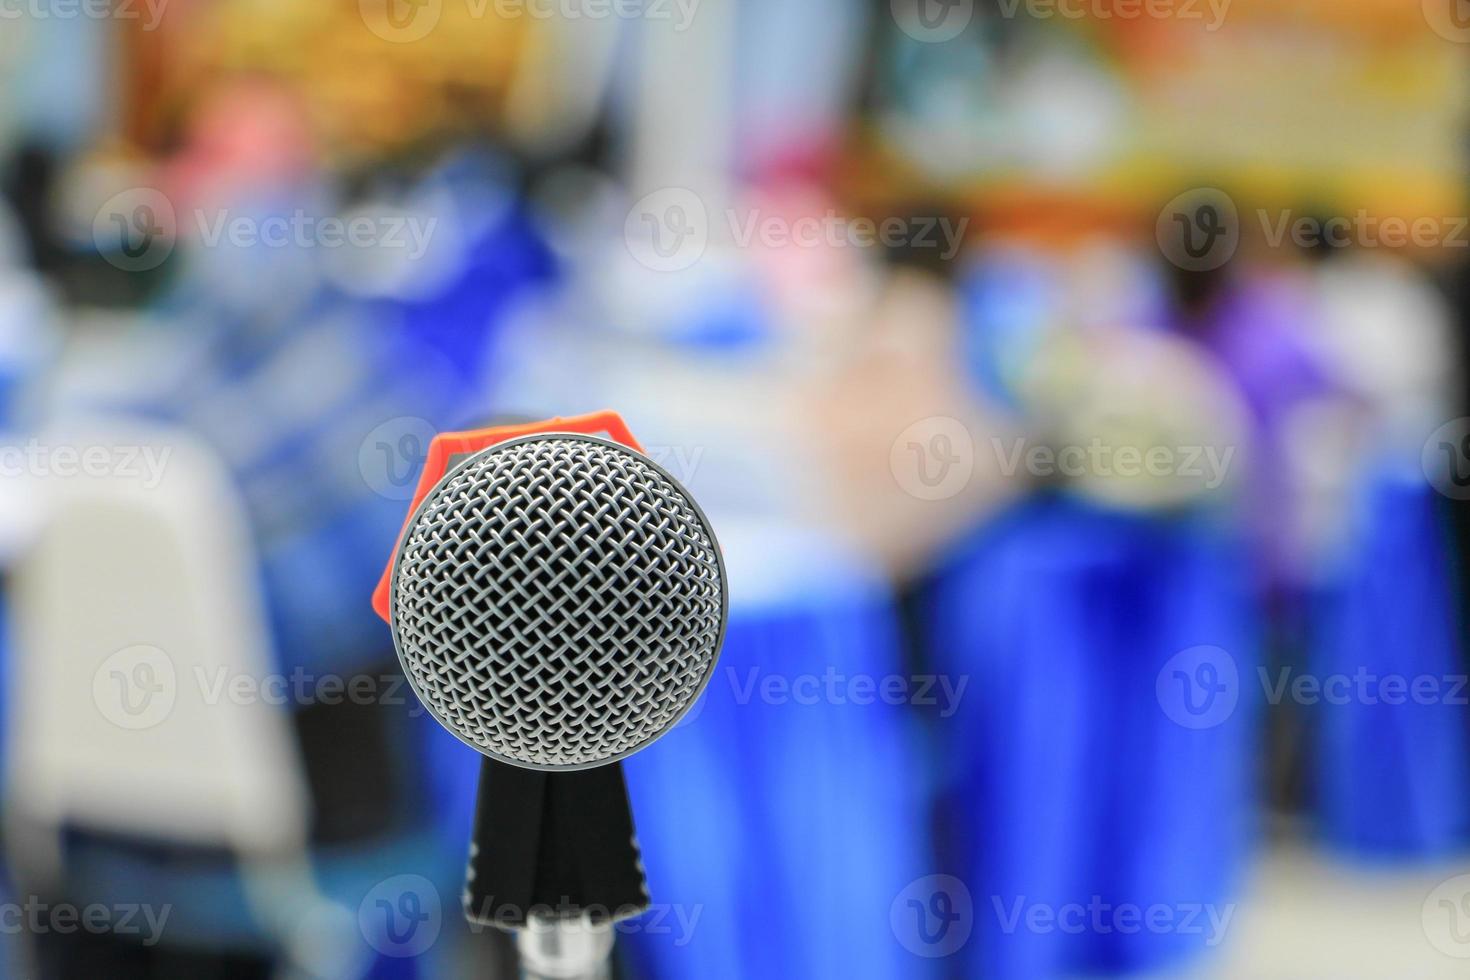 microfone close-up na sala de conferências foto